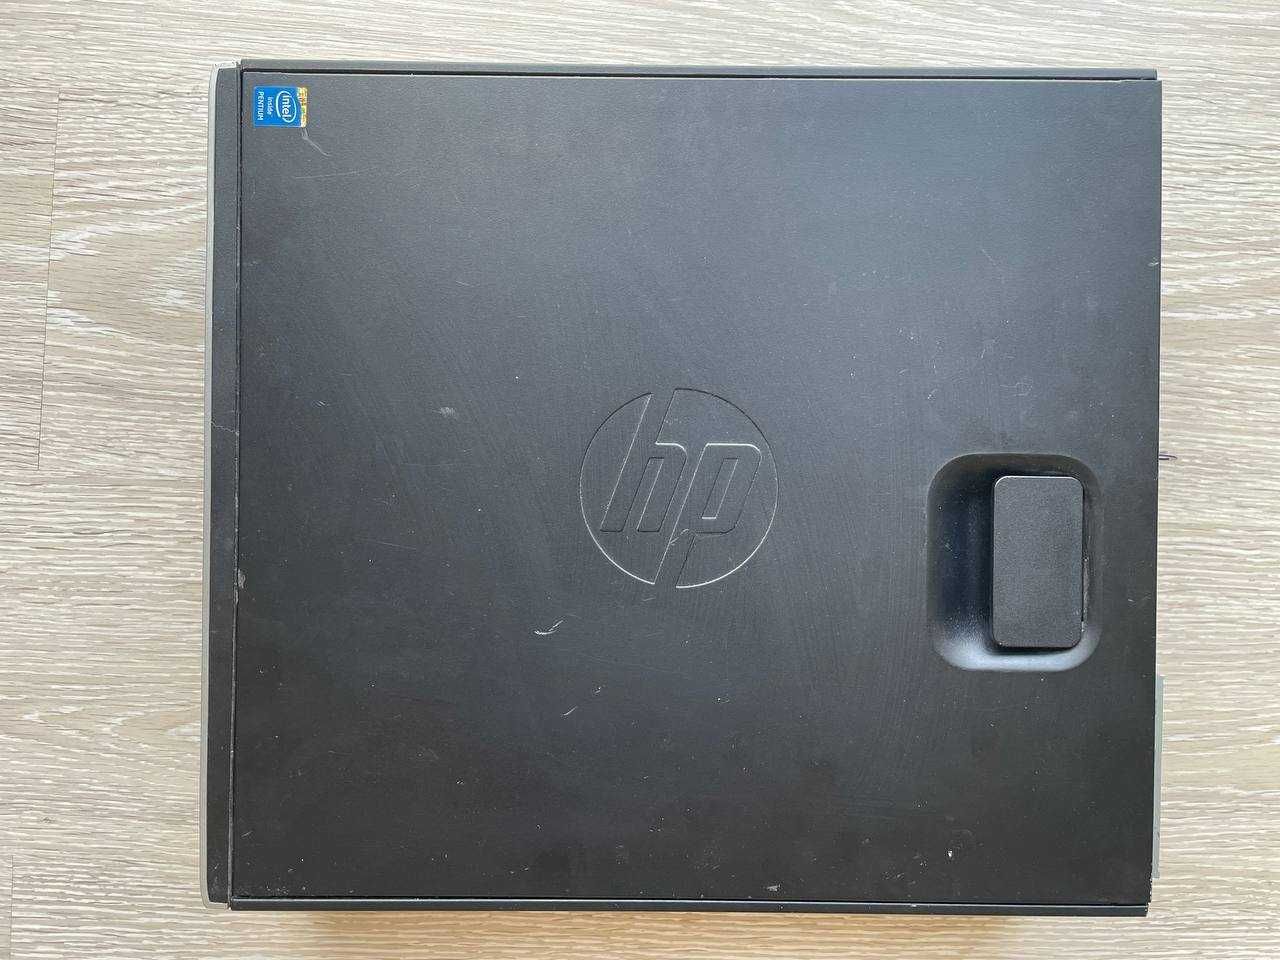 СРОЧНО! Системный блок компьютер ПК HP I7 Compaq 6300 Intel офисный I3